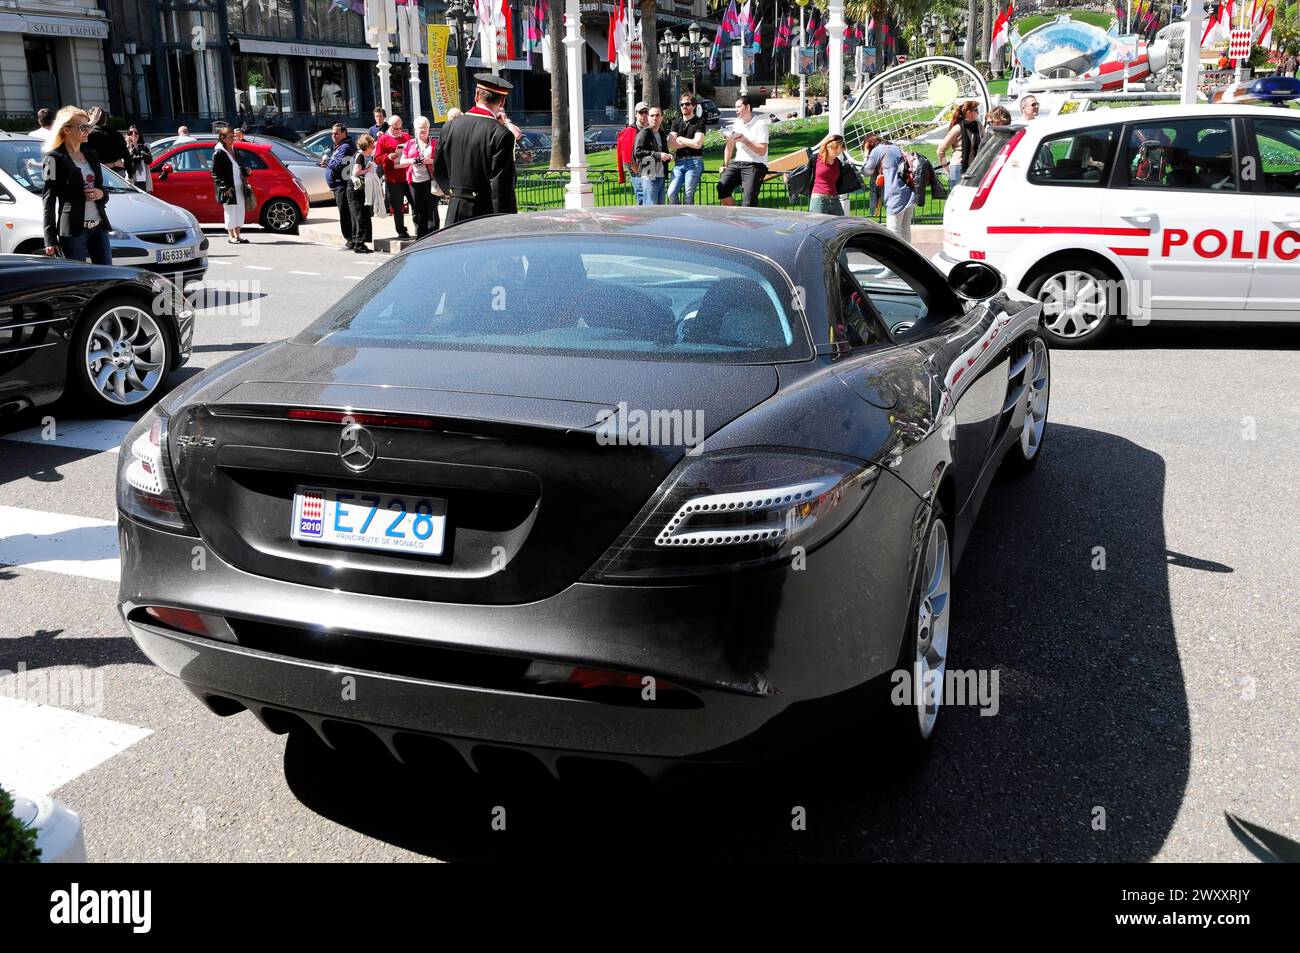 Vue arrière d'une voiture de sport Mercedes-Benz noire en circulation, Monte Carlo, Principauté de Monaco, Monaco Banque D'Images